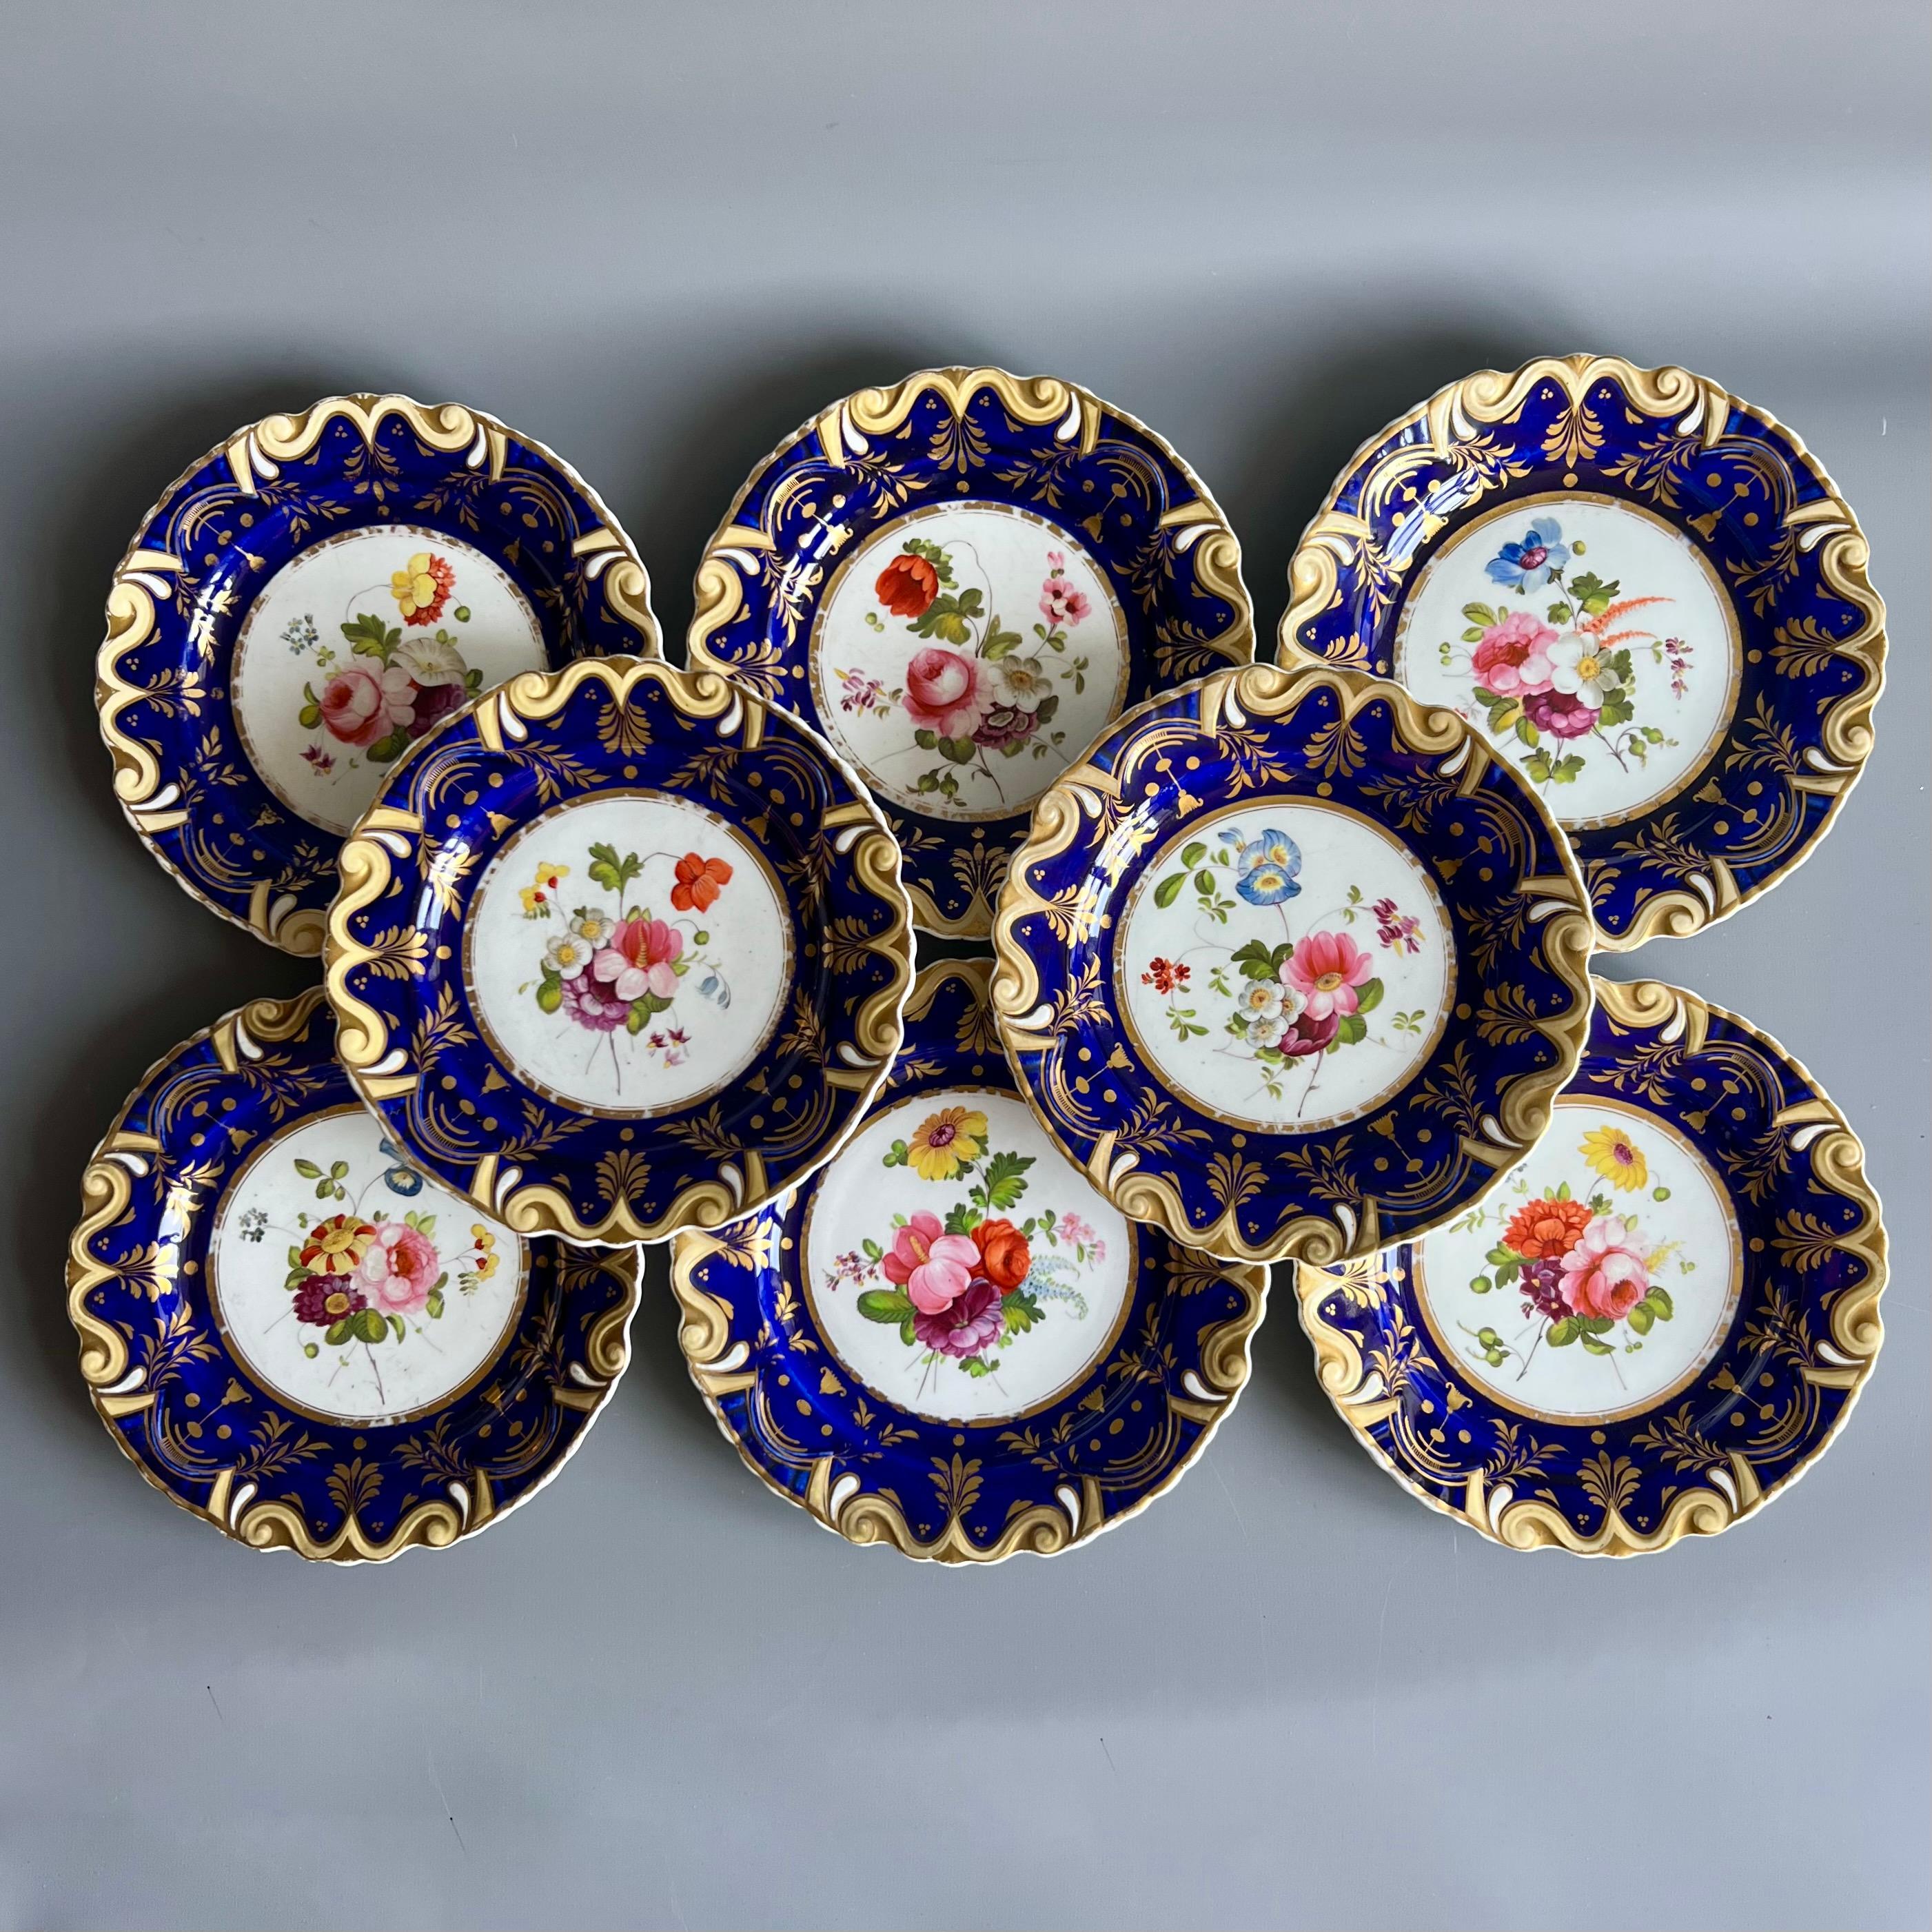 Il s'agit d'un magnifique service à dessert en pièces détachées réalisé par Machin vers 1825, période connue sous le nom de Regency. Les objets présentent la célèbre moulure 